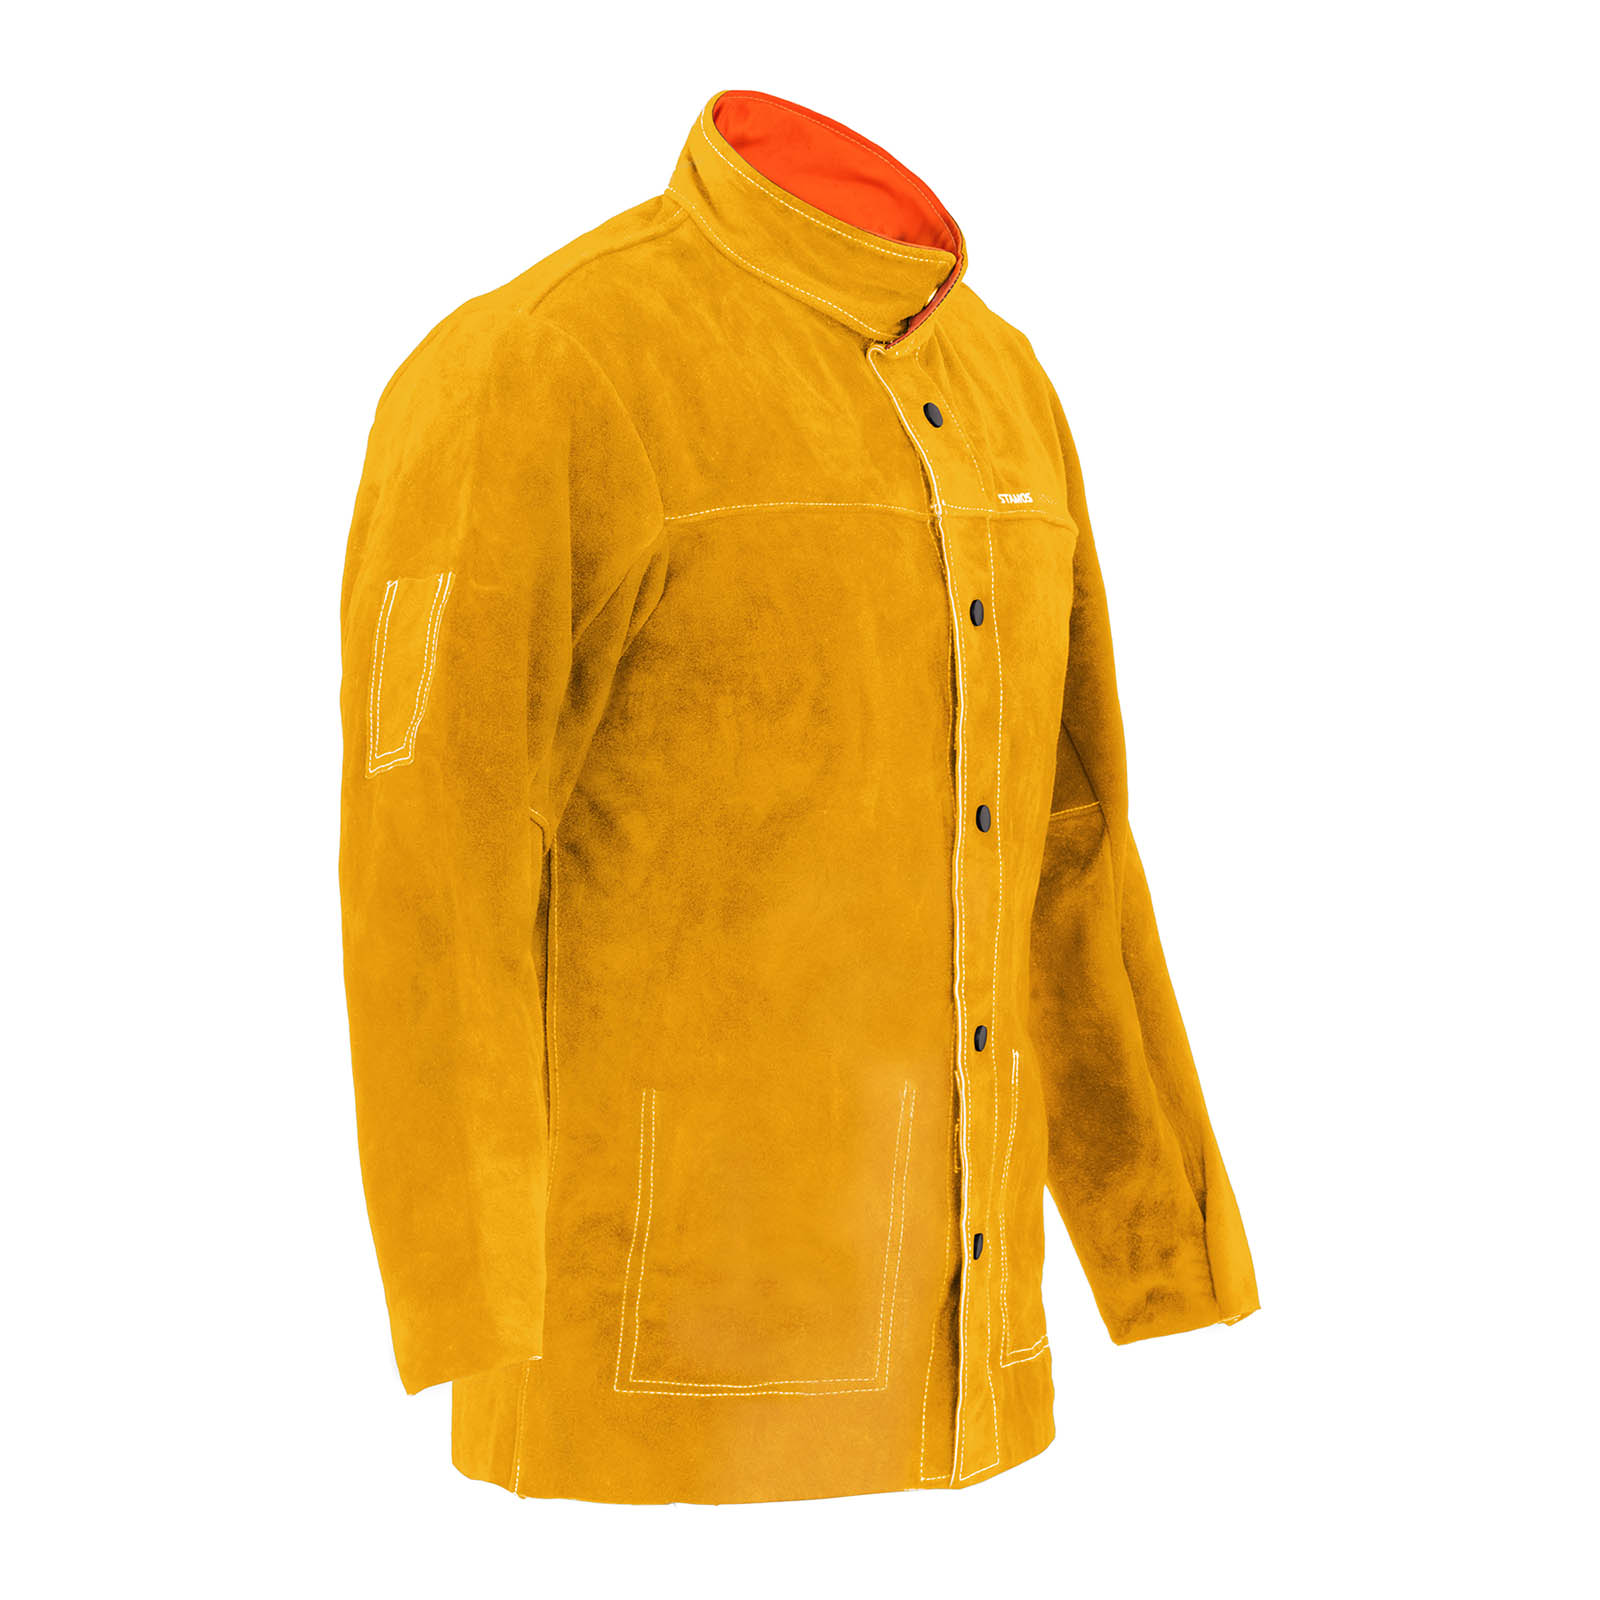 Goveđa kožna jakna za varenje - zlatna - veličina L